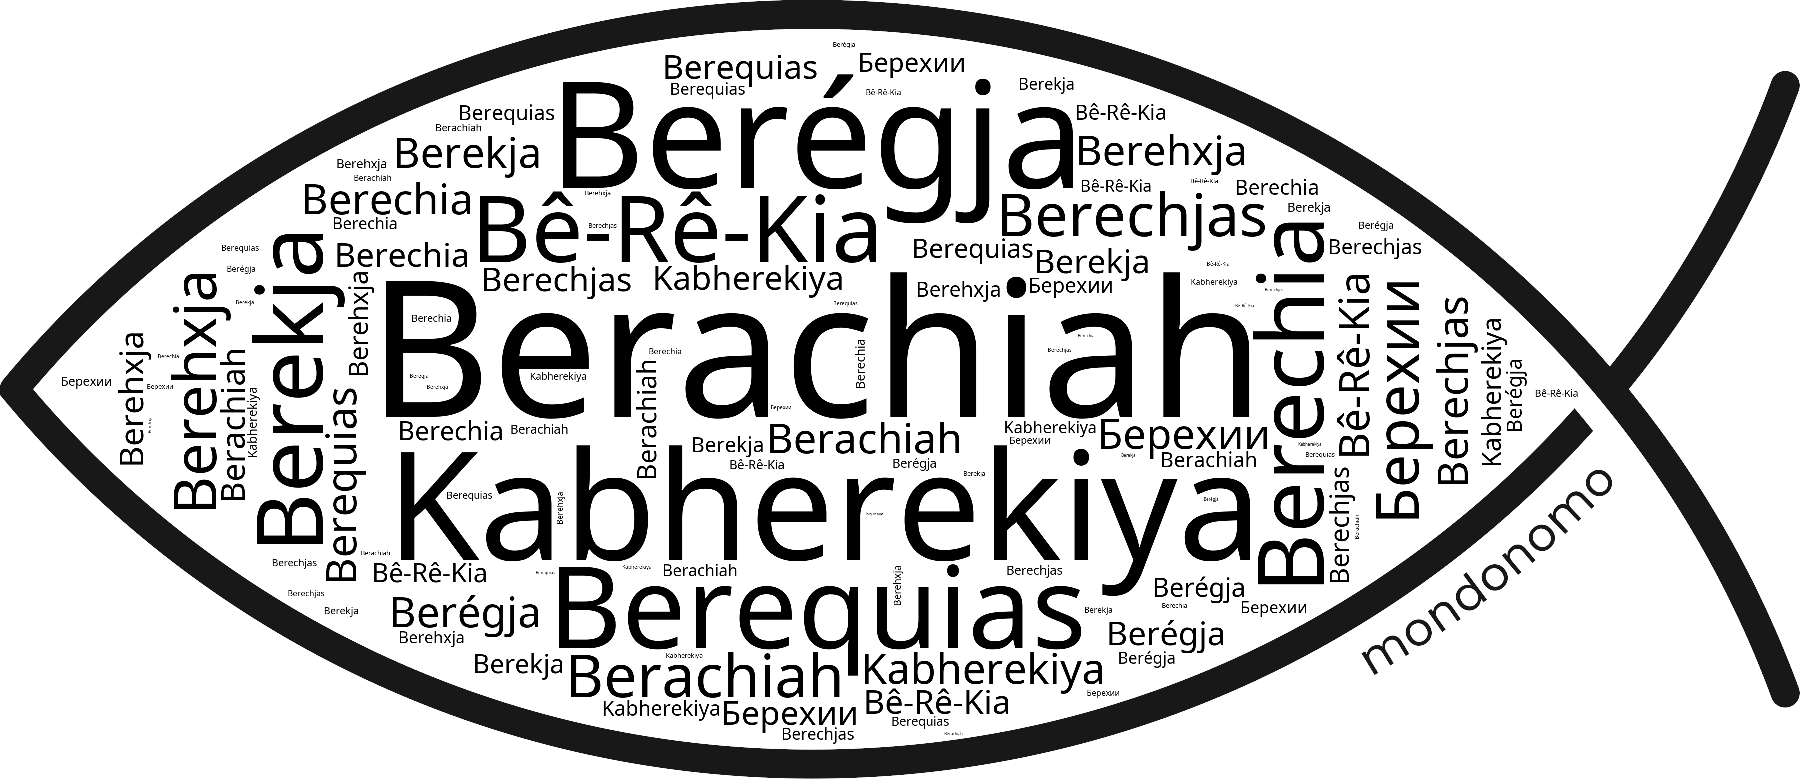 Name Berachiah in the world's Bibles